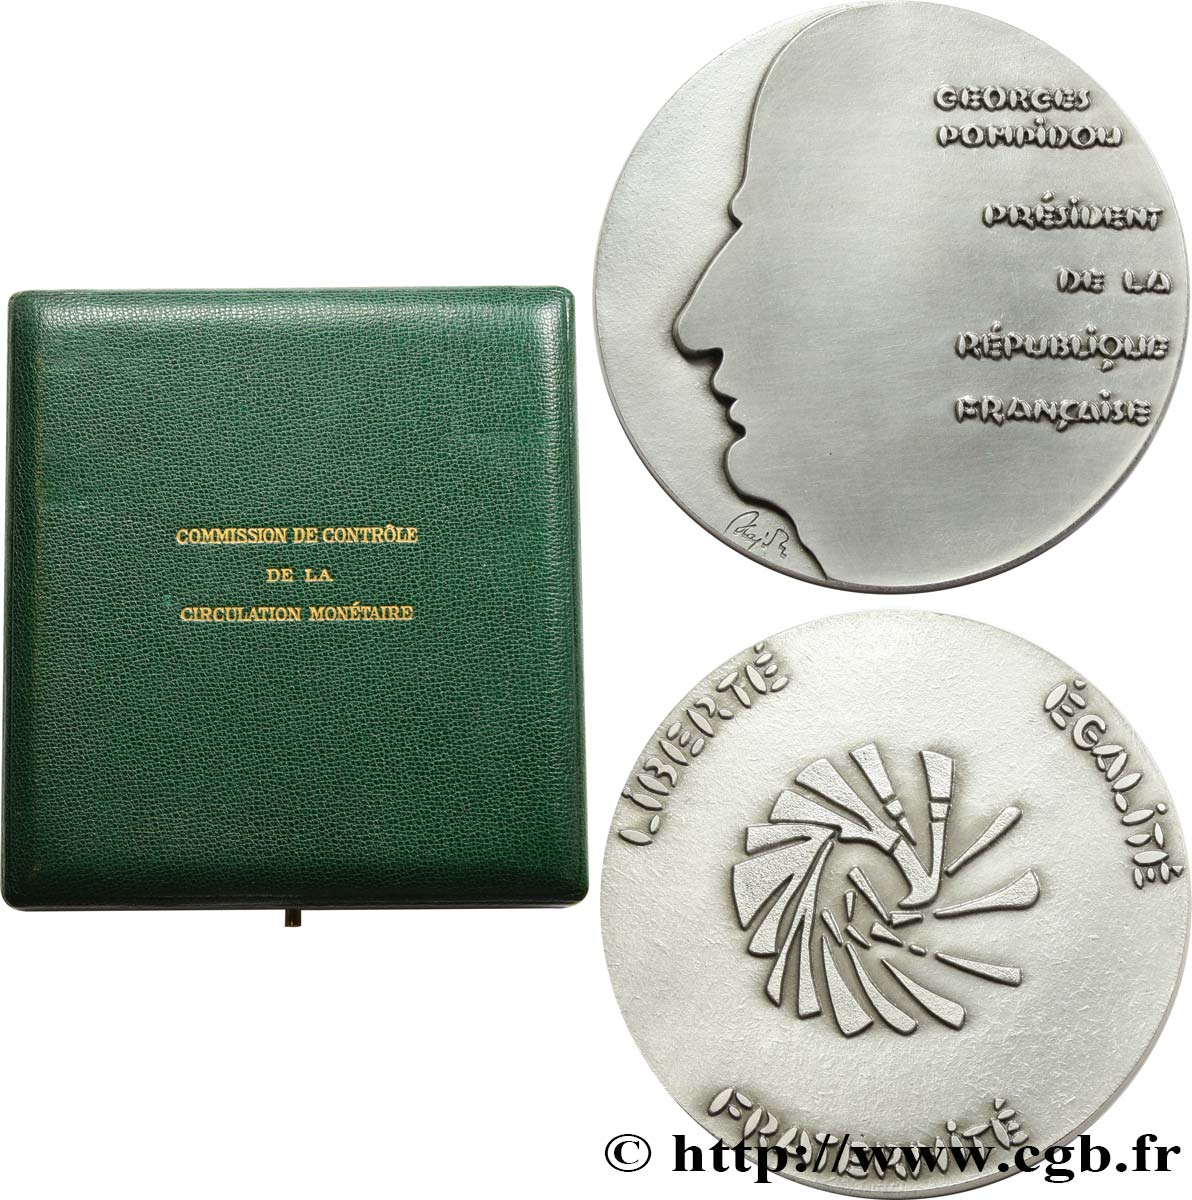 CINQUIÈME RÉPUBLIQUE Médaille, Georges Pompidou, commission de contrôle de la circulation monétaire SPL